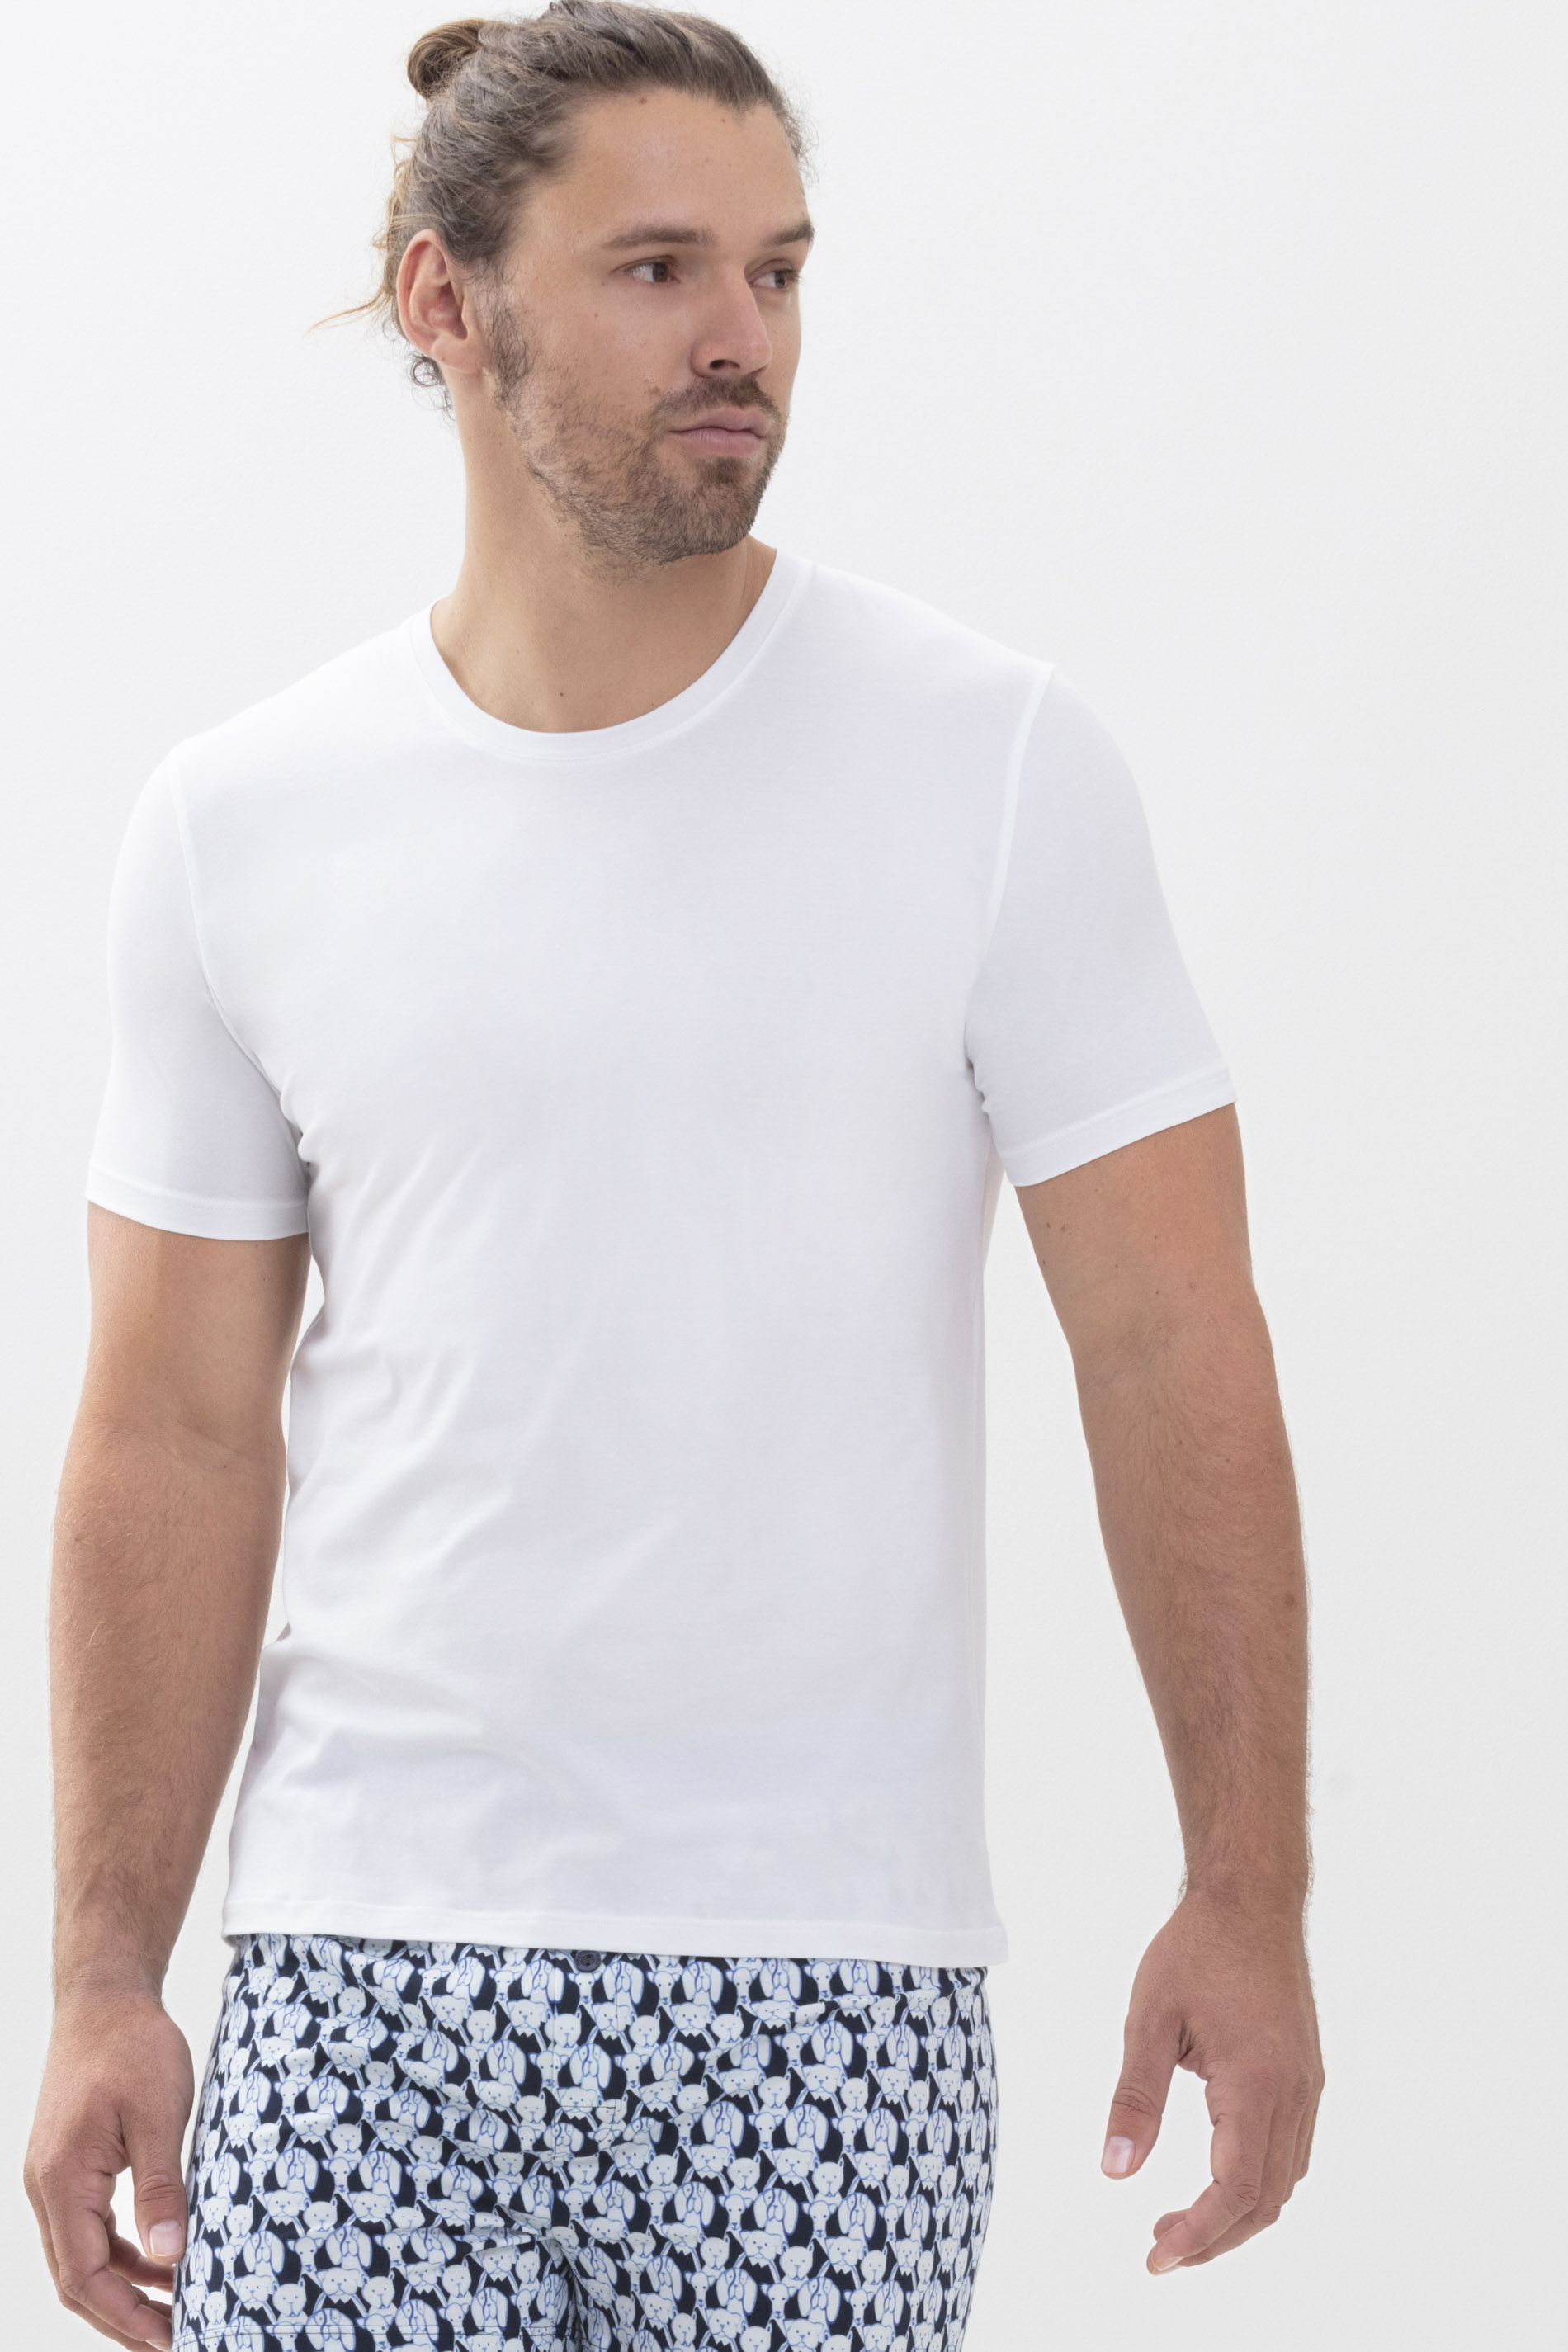 T-Shirt Weiss Serie RE:THINK COLOUR Festlegen | mey®